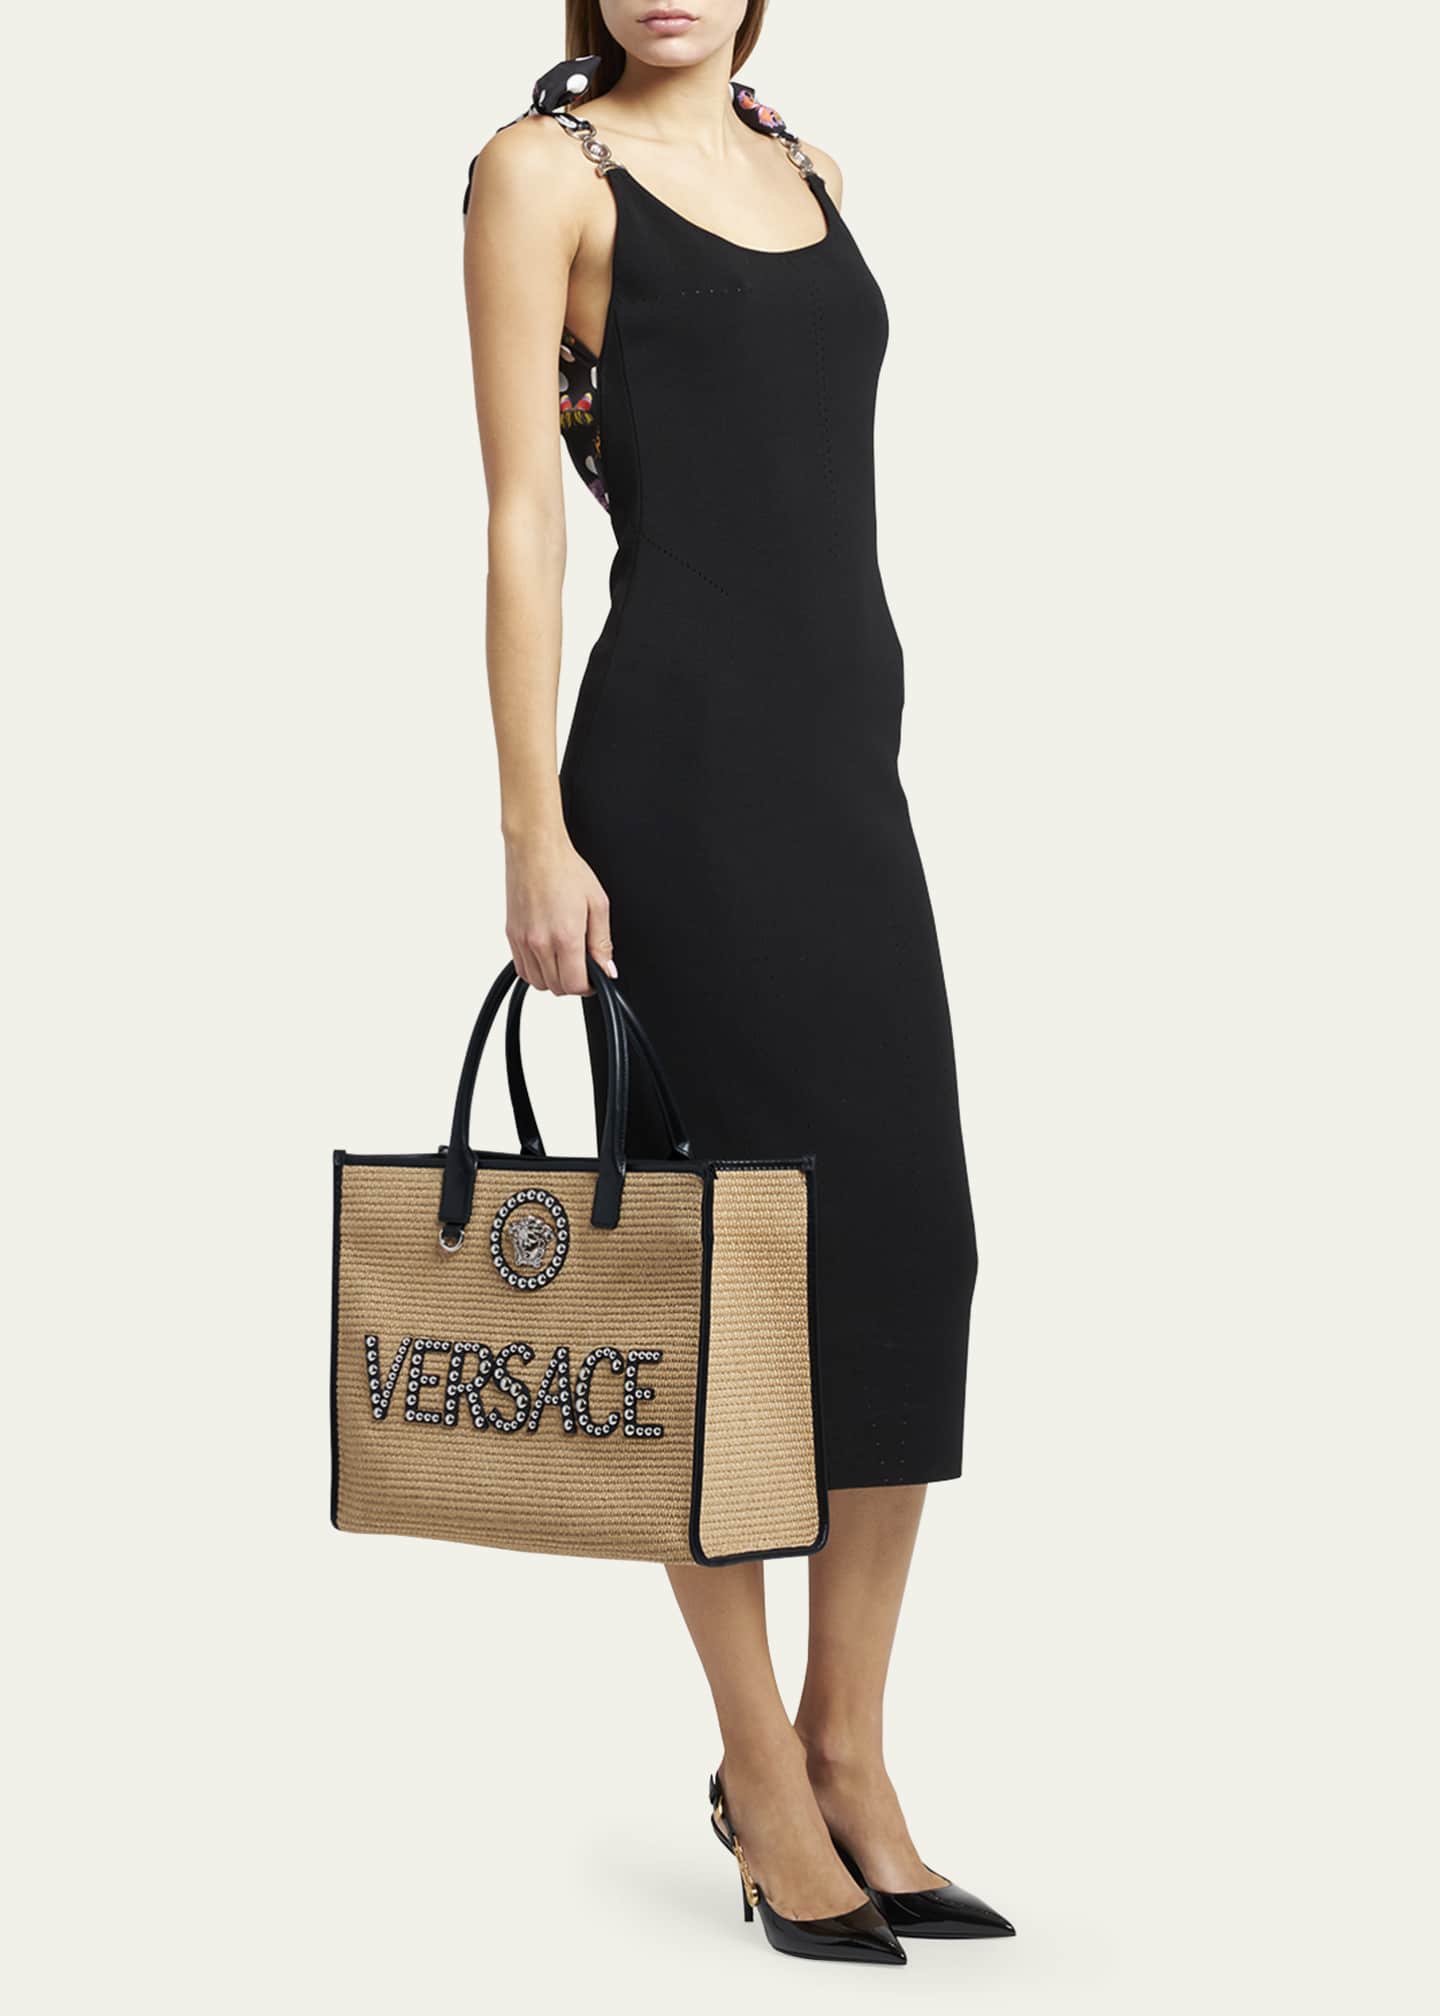 Versace Large La Medusa Embellished Tote Bag - Farfetch